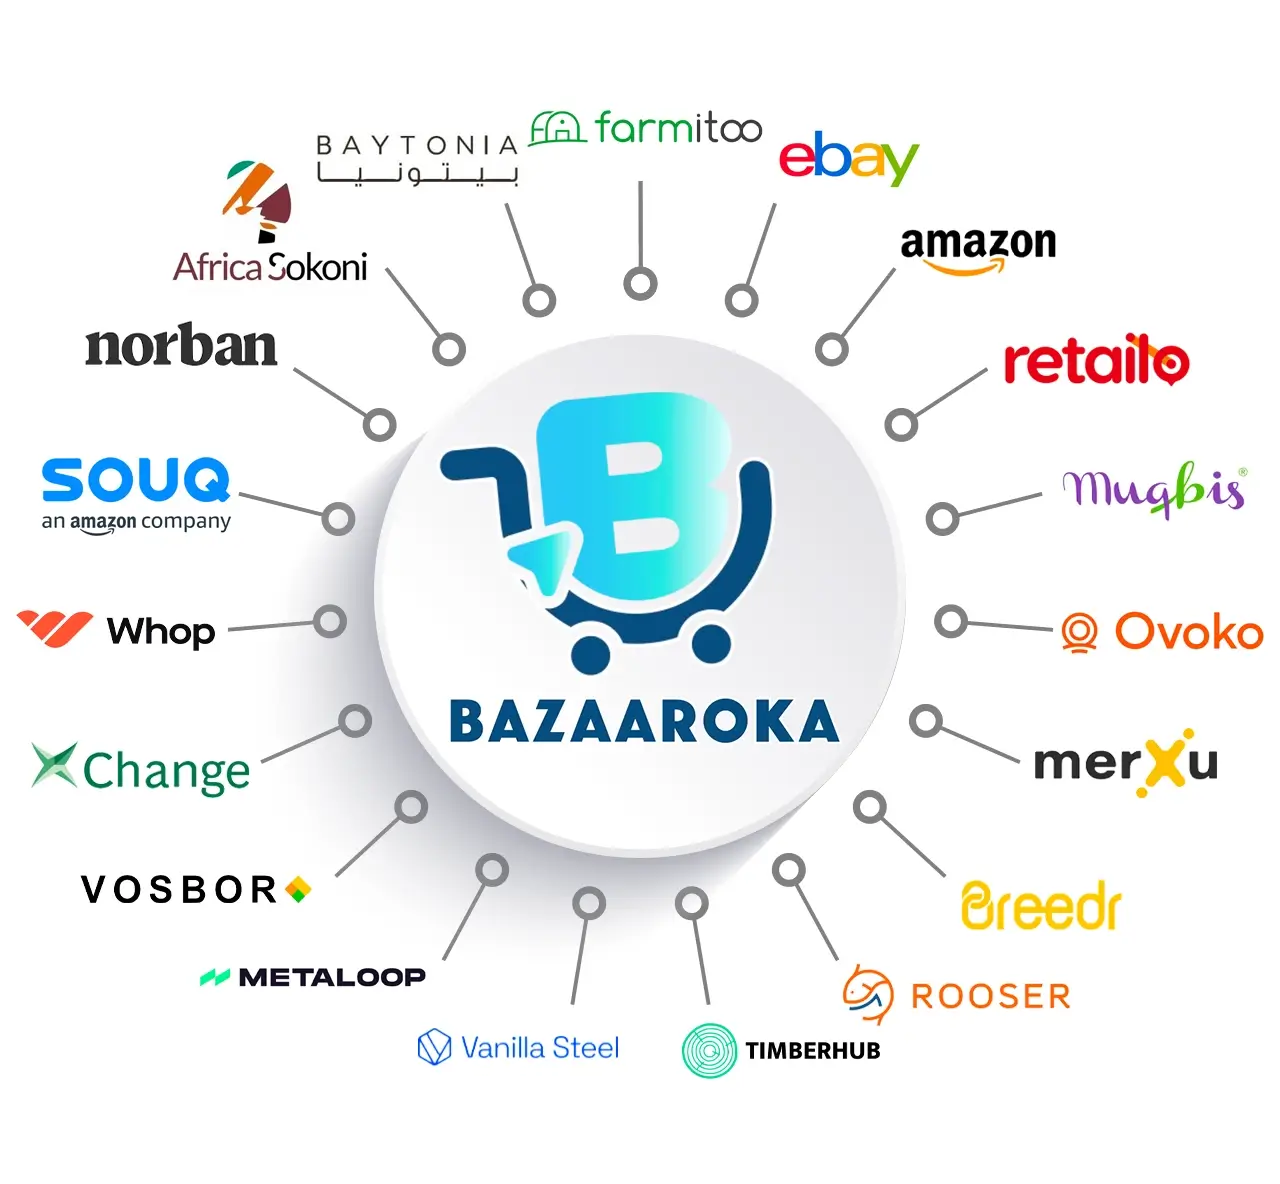 Bazaaroka eShop programming Souq norban rooser vosbor ebay amazon muqbis farmitoo whop script